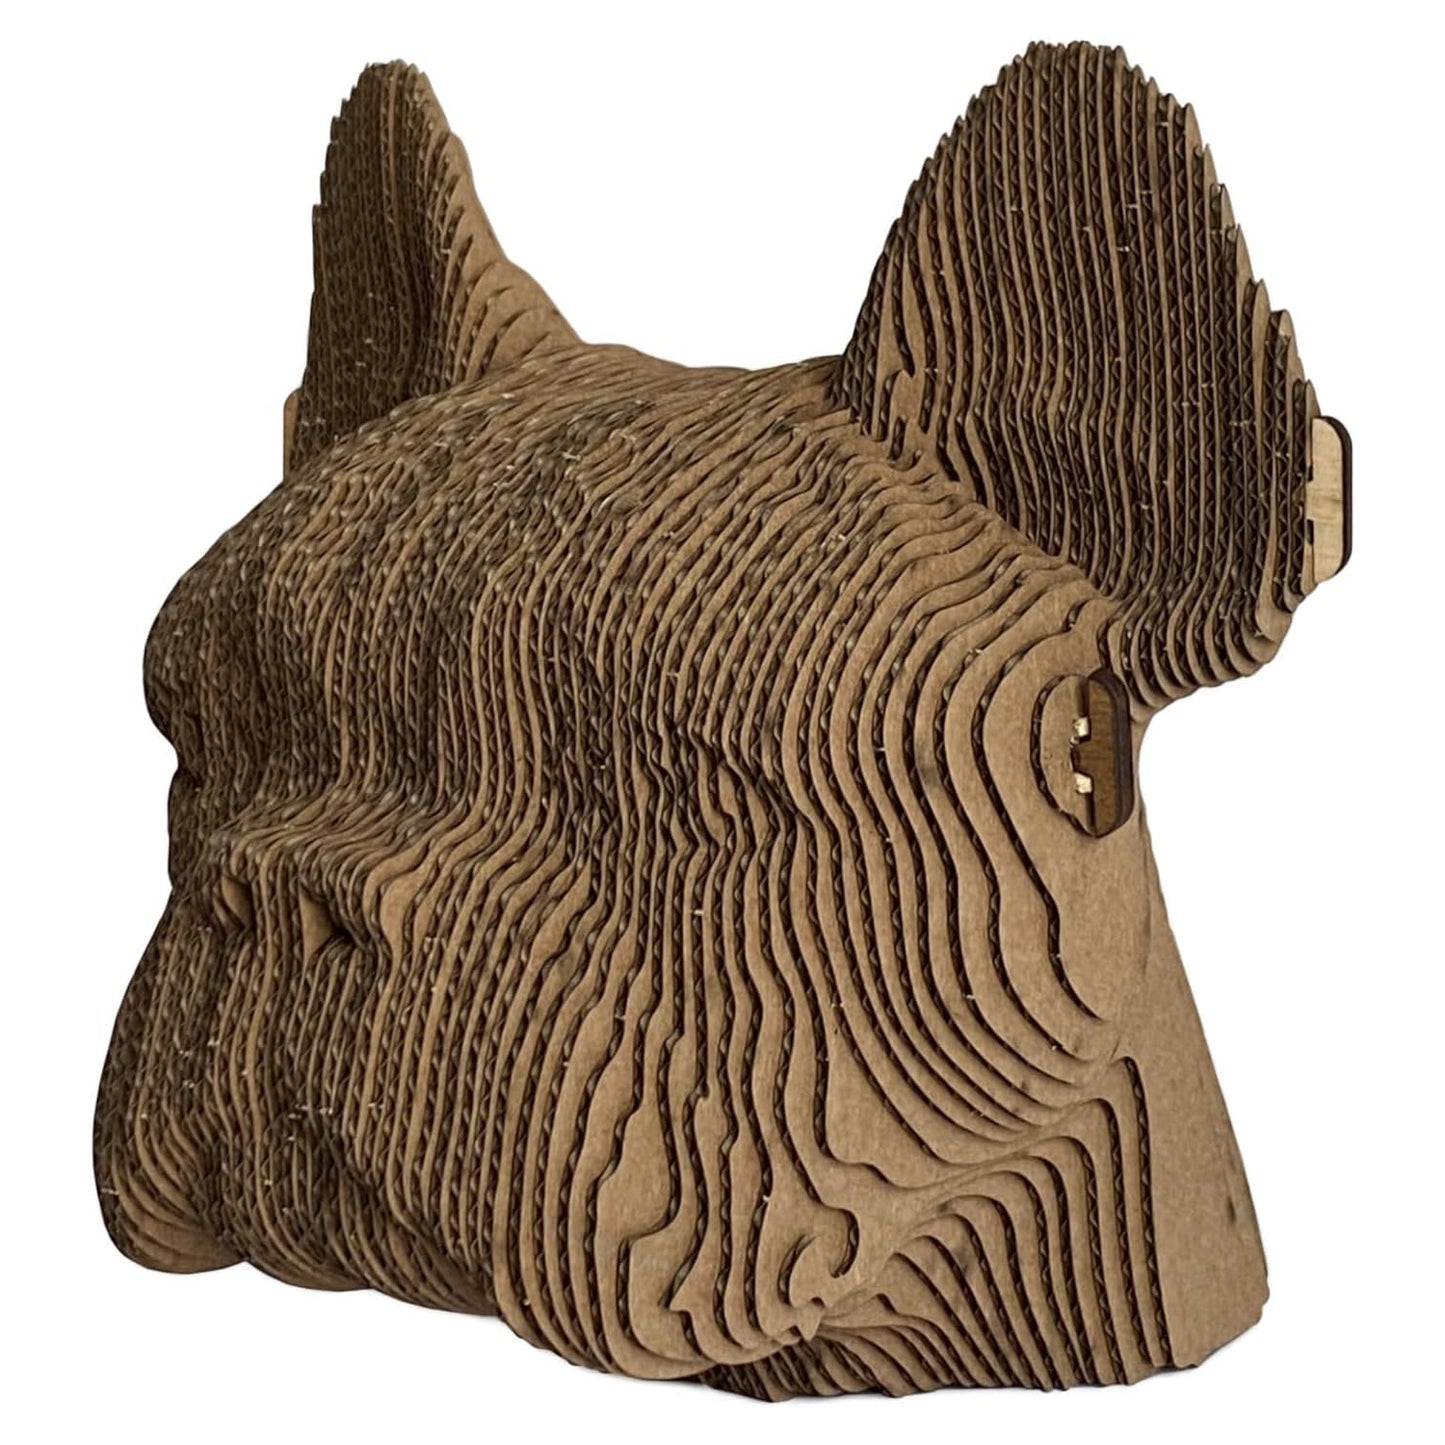 3D huvudskulptur gjord av wellpapp - Tjurhund